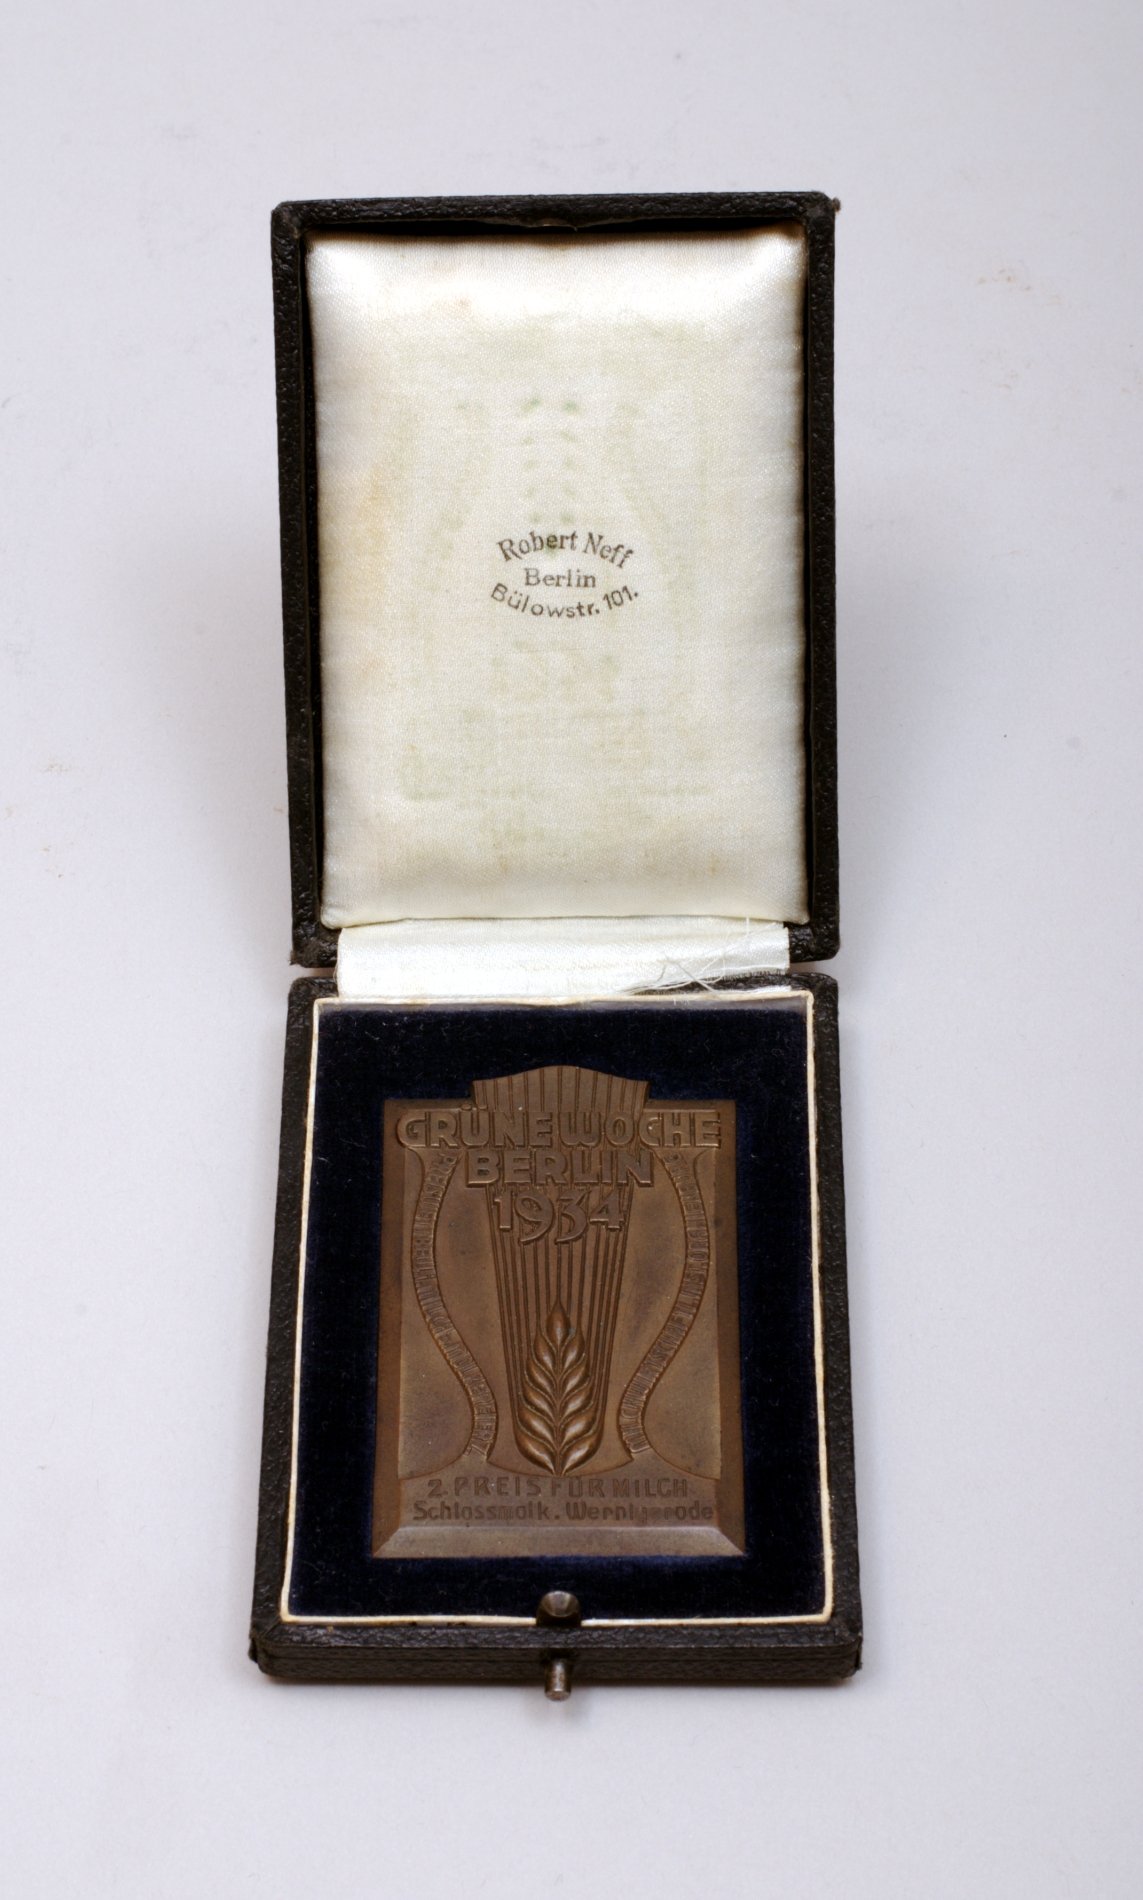 Medaille "Grüne Woche Berlin 1934 2. Preis für Milch" (Stiftung Domäne Dahlem - Landgut und Museum, Weiternutzung nur mit Genehmigung des Museums CC BY-NC-SA)